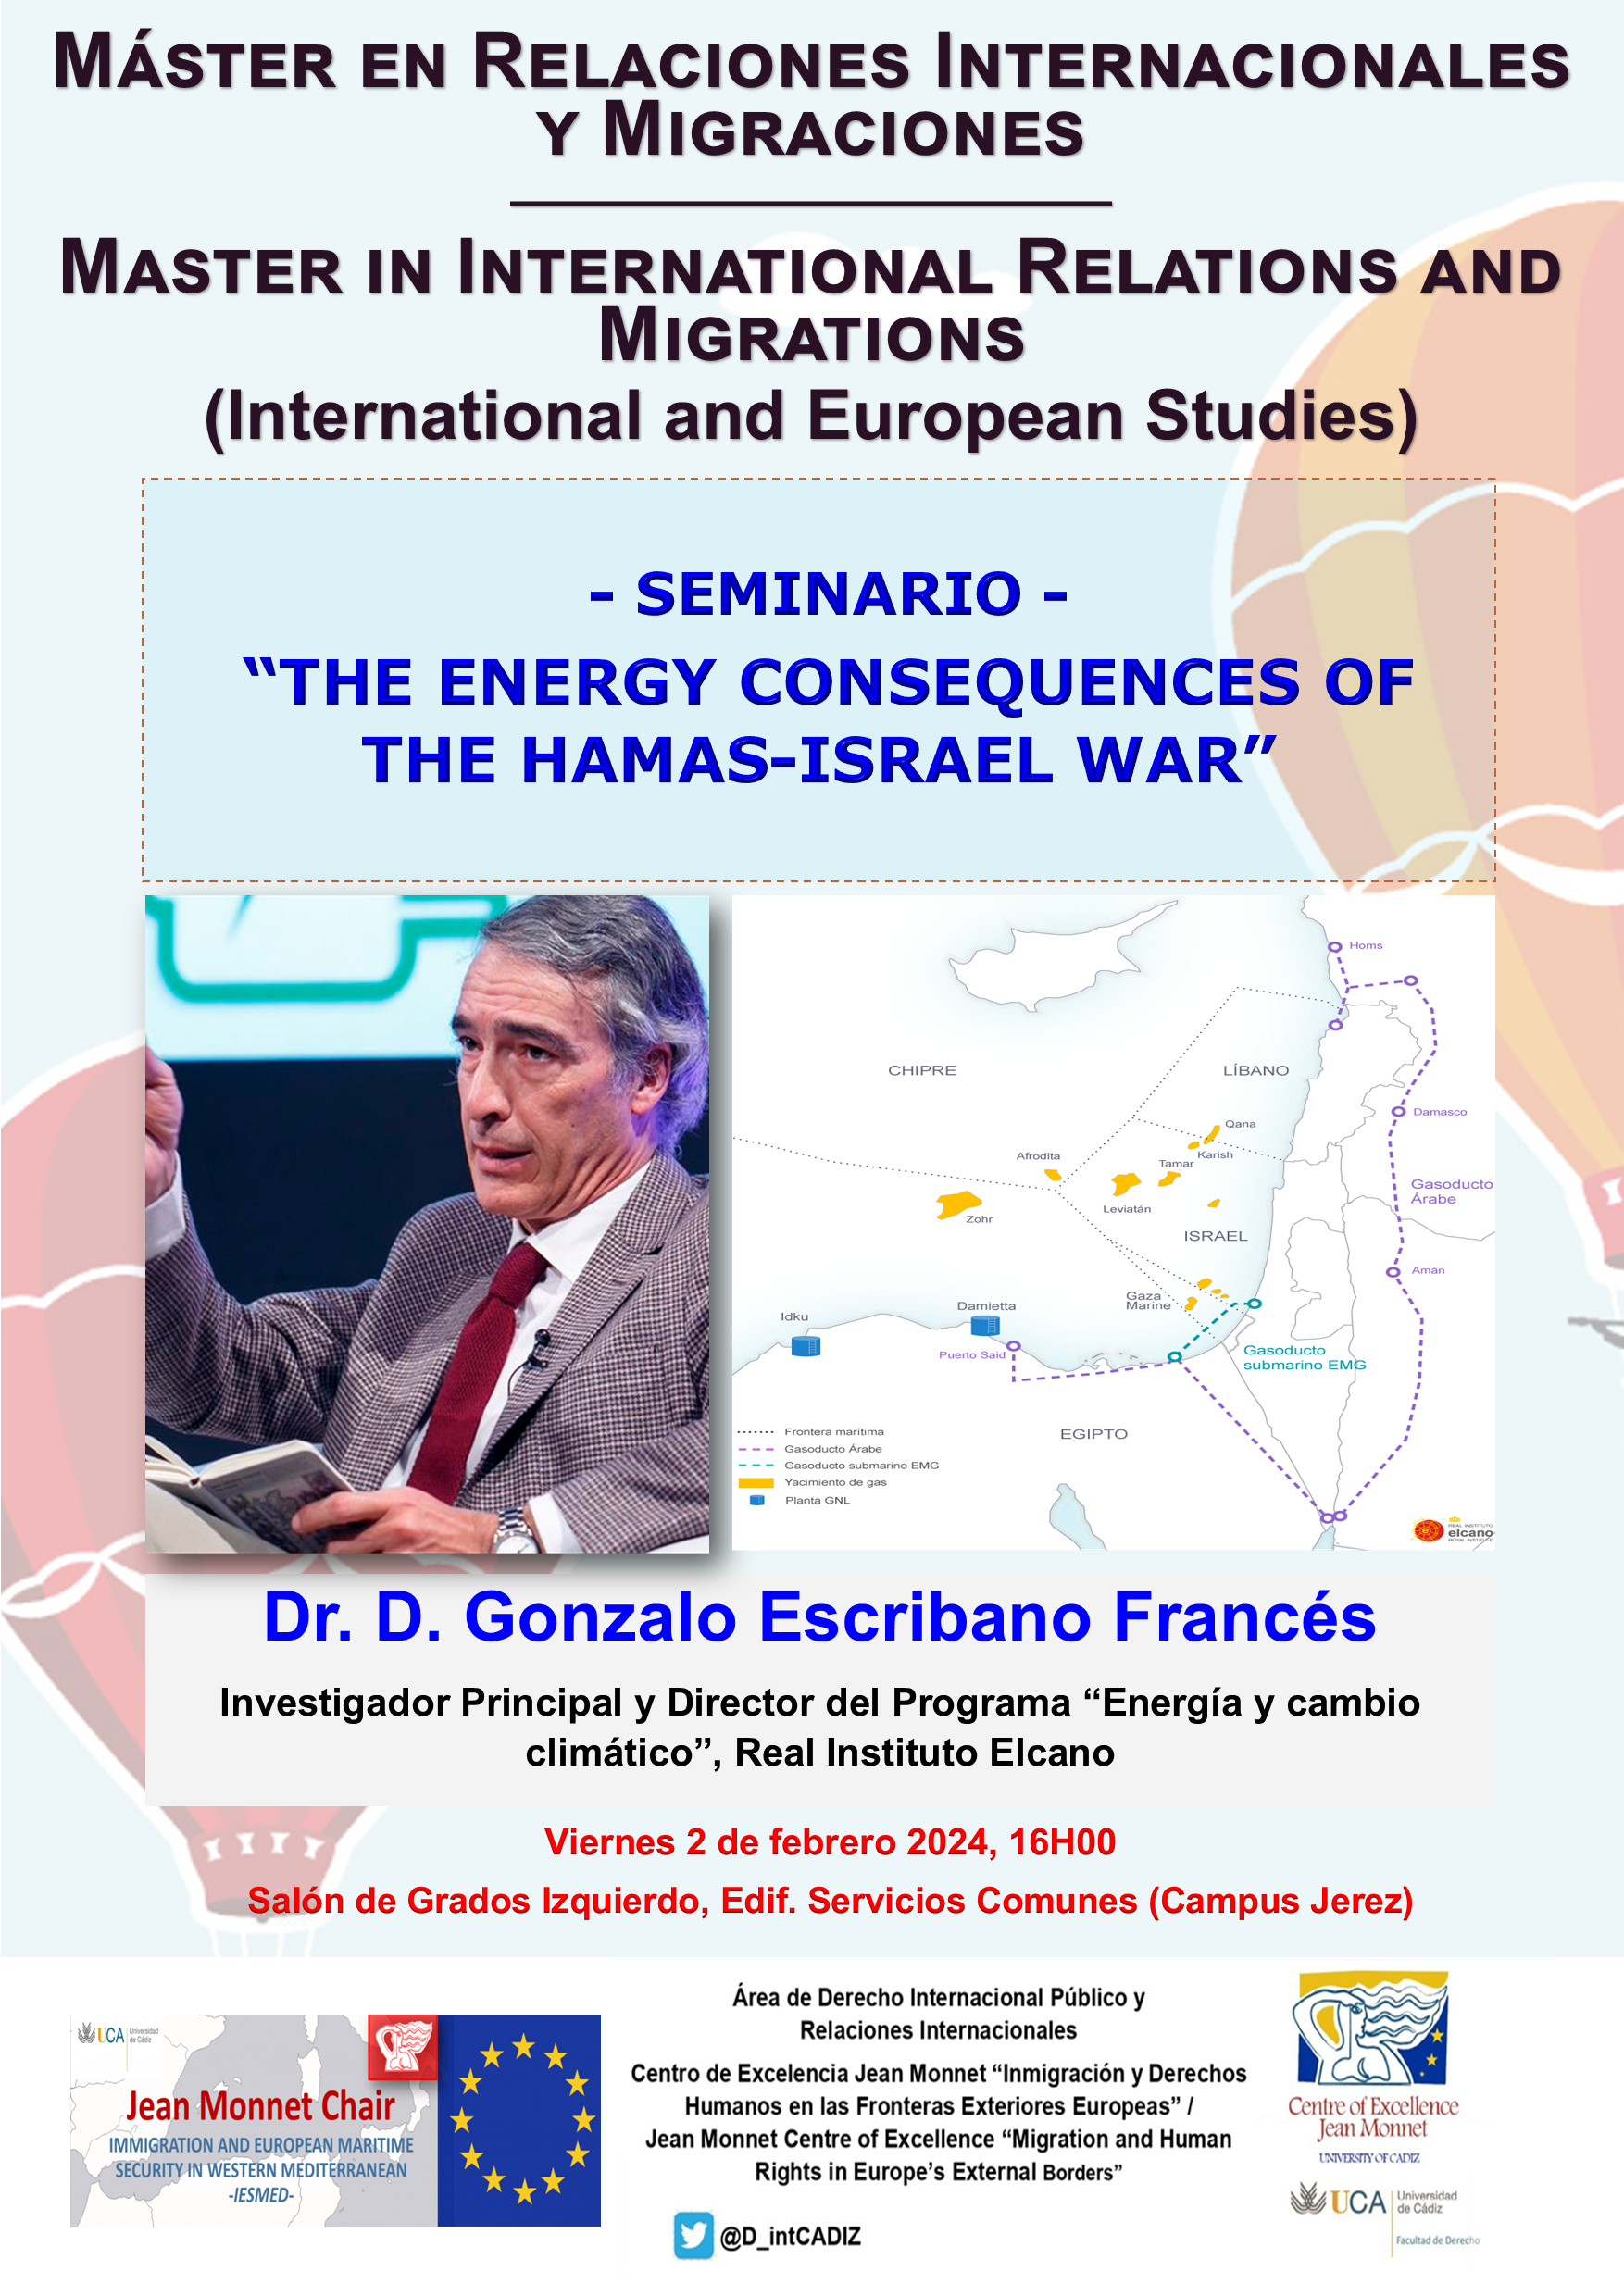 SEMINARIO “THE ENERGY CONSEQUENCES OF THE HAMAS-ISRAEL WAR”, por el Dr. D. Gonzalo Escribano Fran...